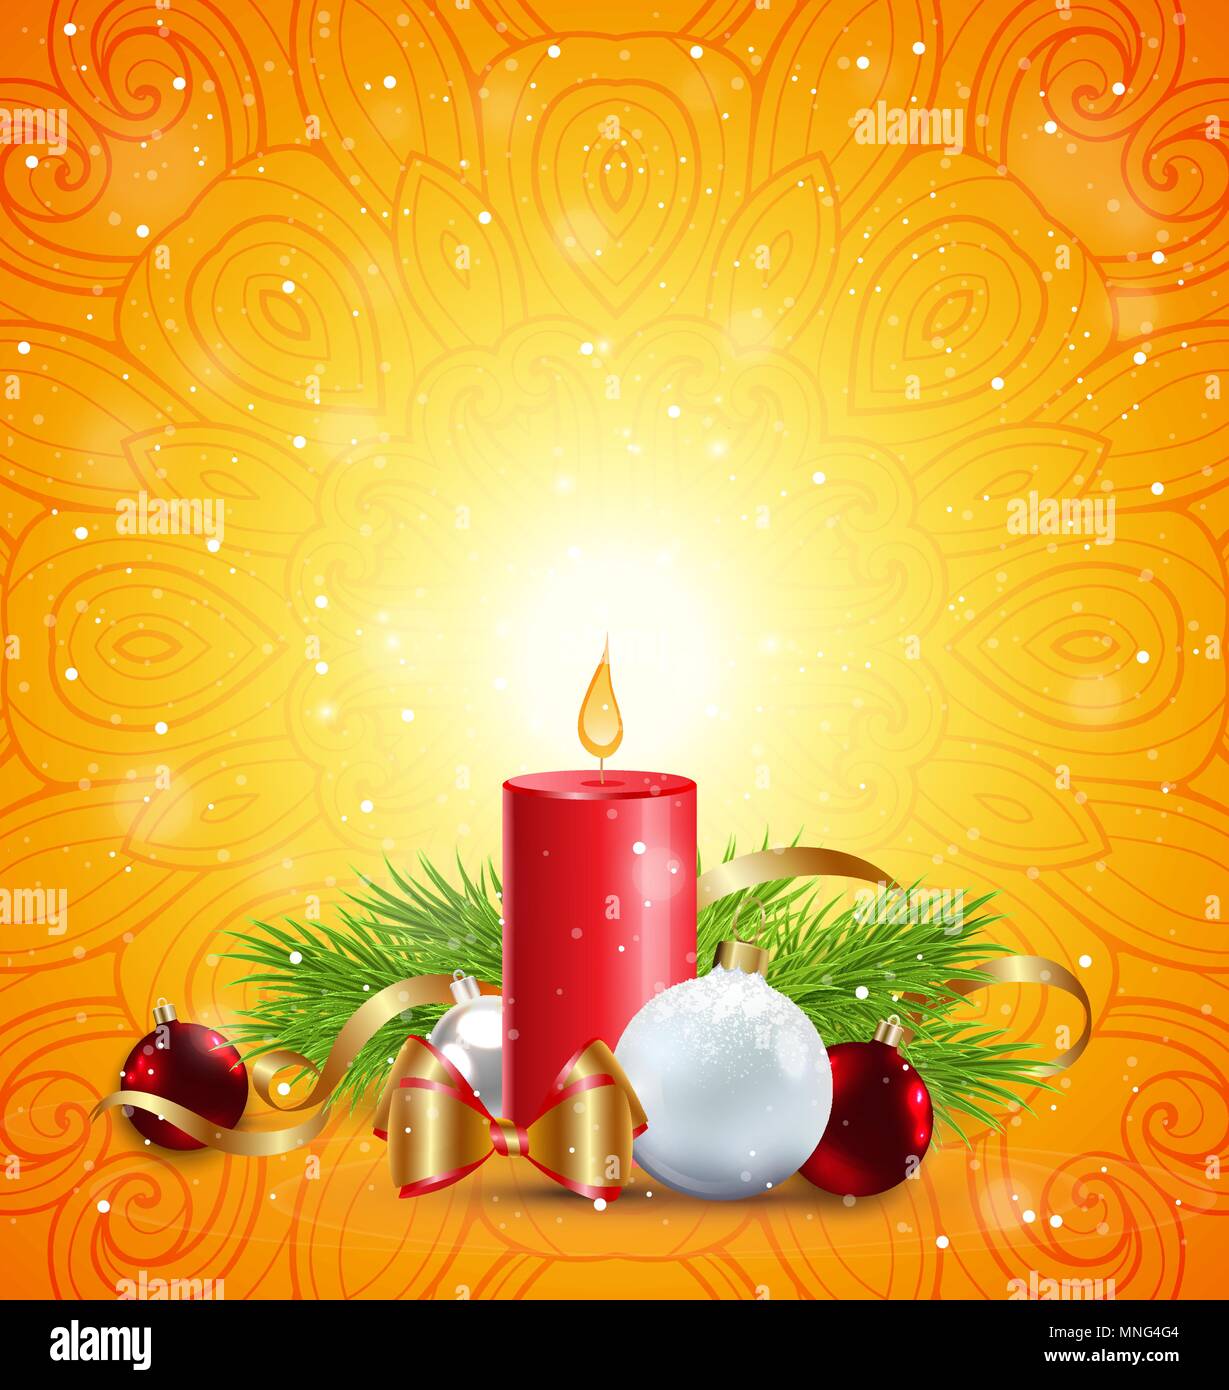 Natale biglietto di auguri con candela rossa, verde ramo di abete bianco e  decorazioni su uno sfondo arancione Immagine e Vettoriale - Alamy